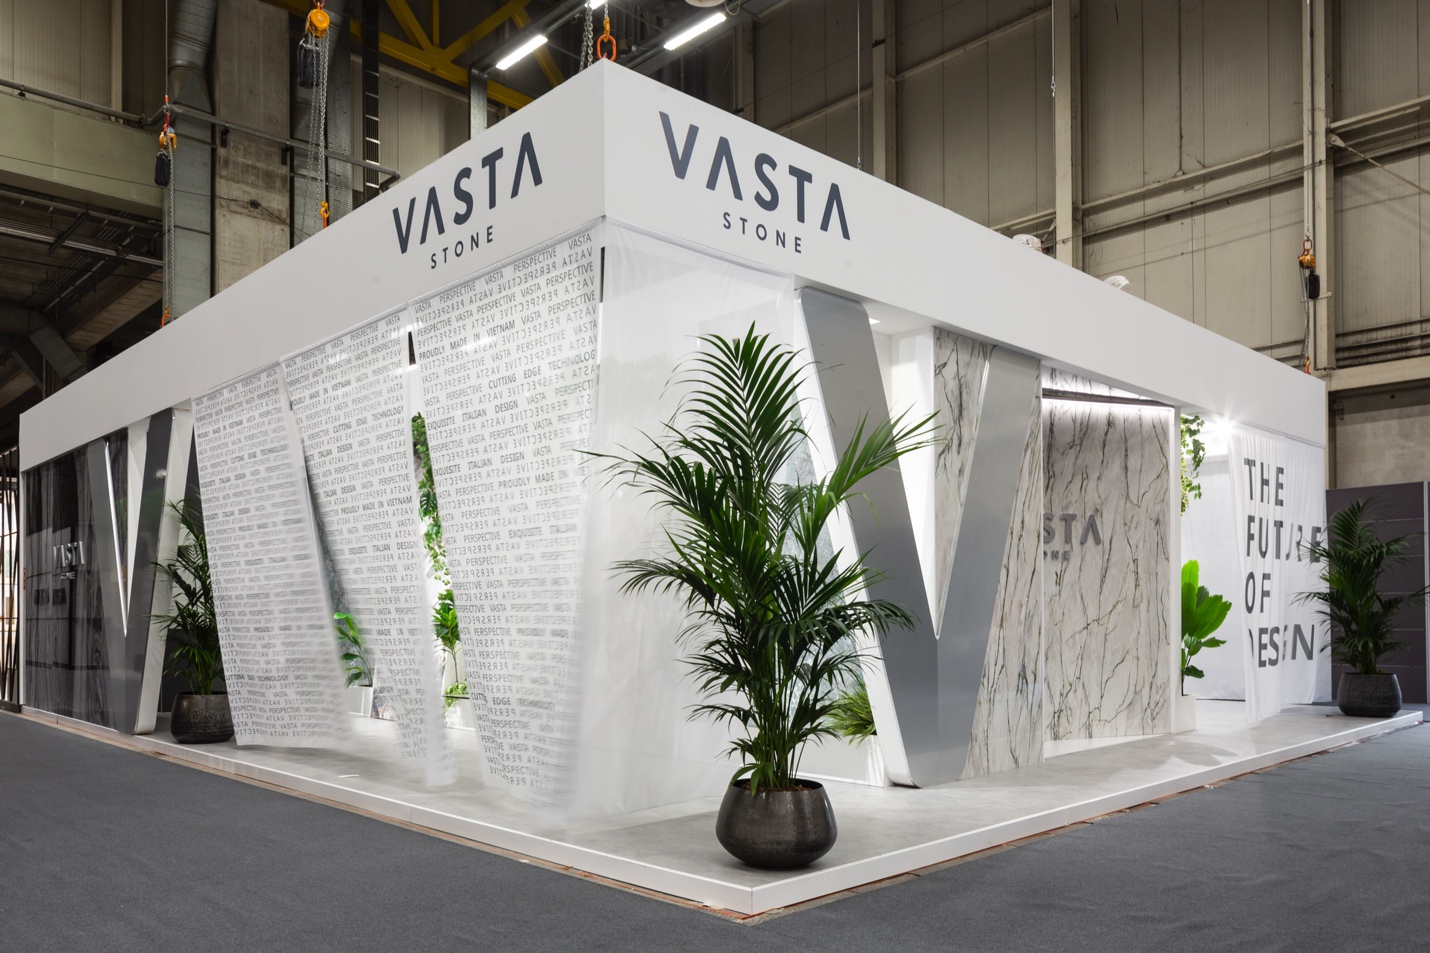 Thiết kế gian hàng đầy sáng tạo của Vasta Stone: Hướng đến những điều vô hạn phi thường